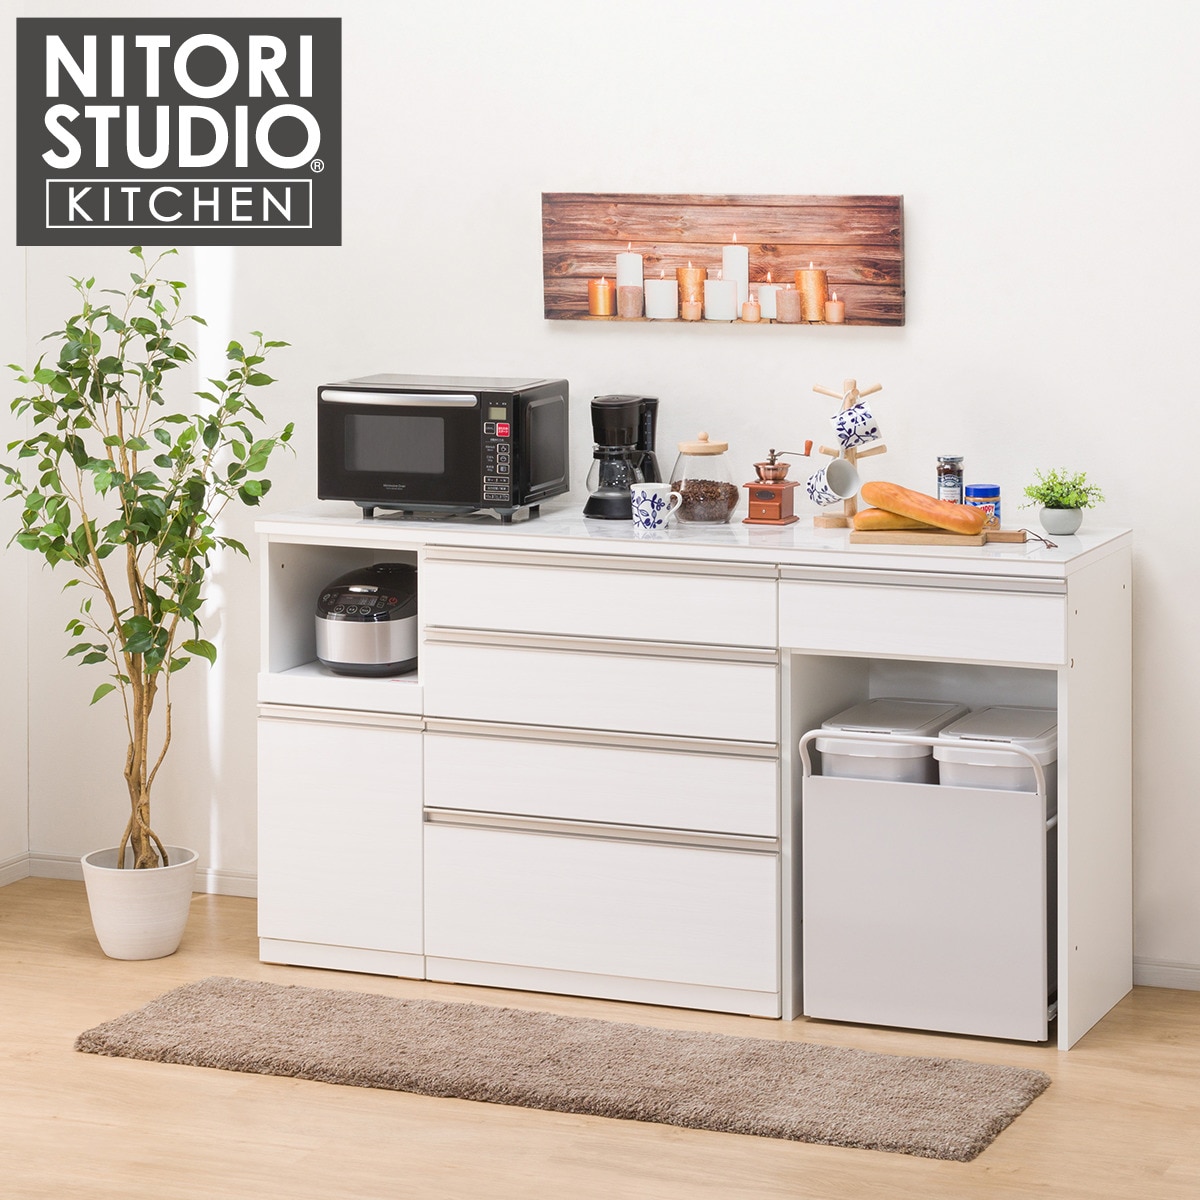 ニトリ キッチンカウンター(キュリー2 80CT WH) - 収納家具